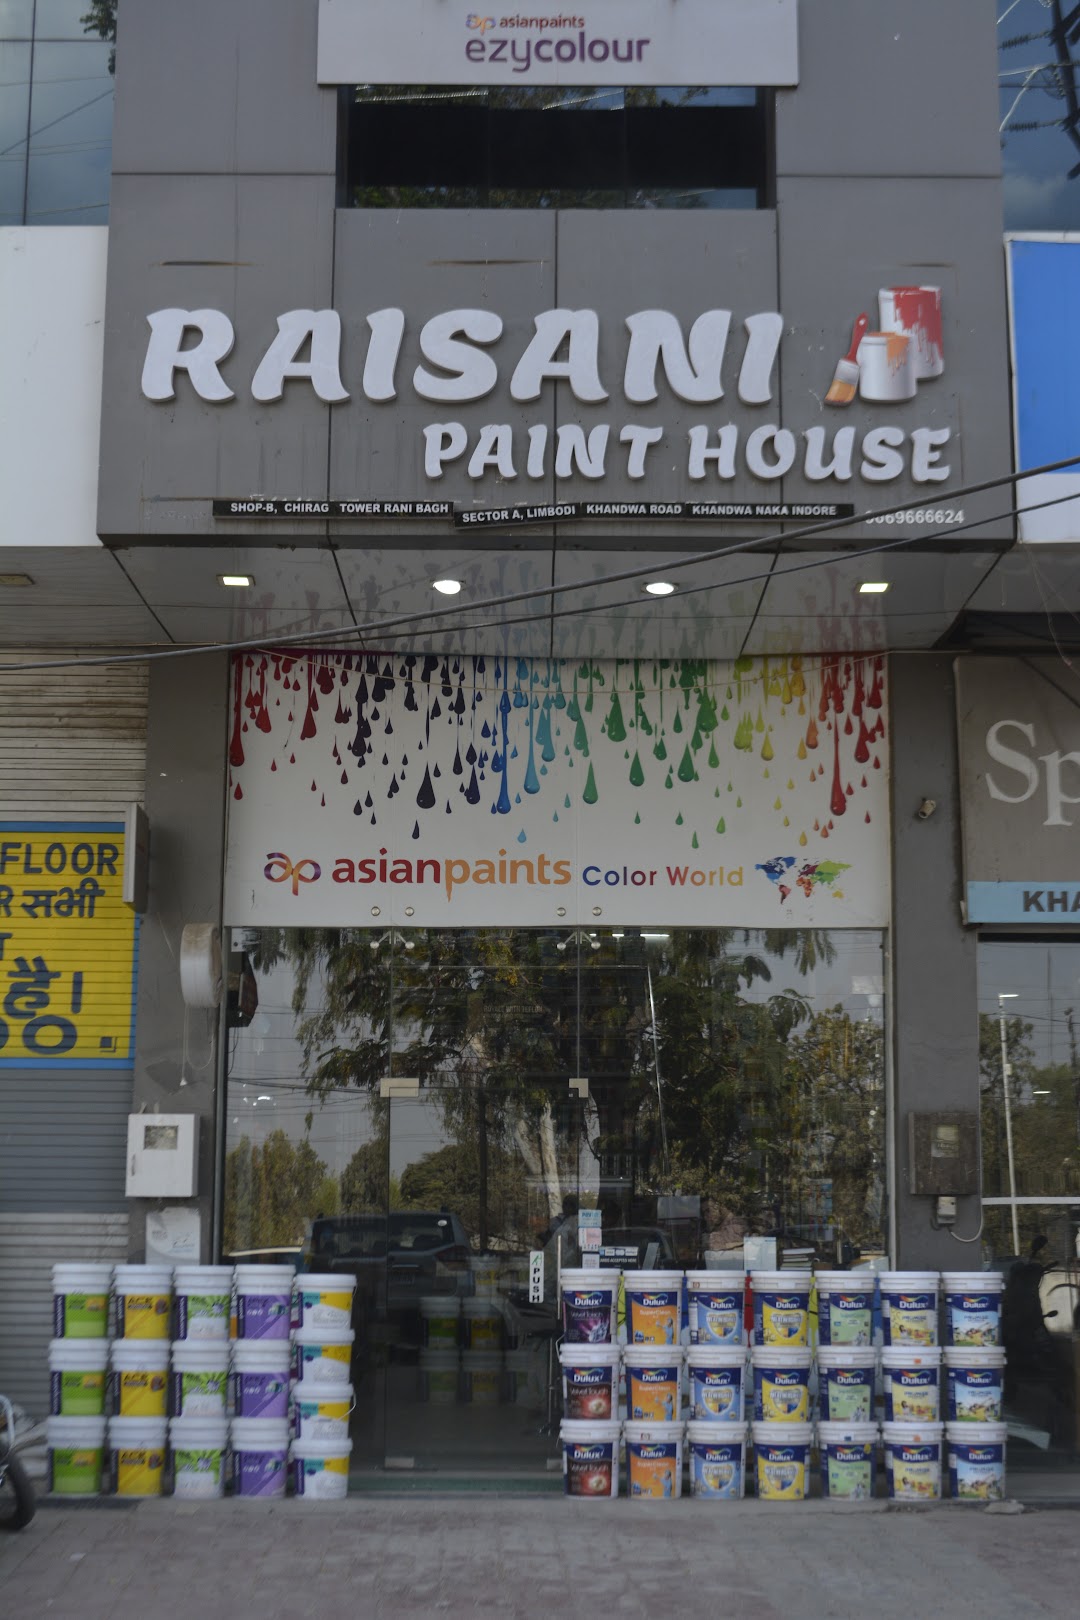 Raisani paint house